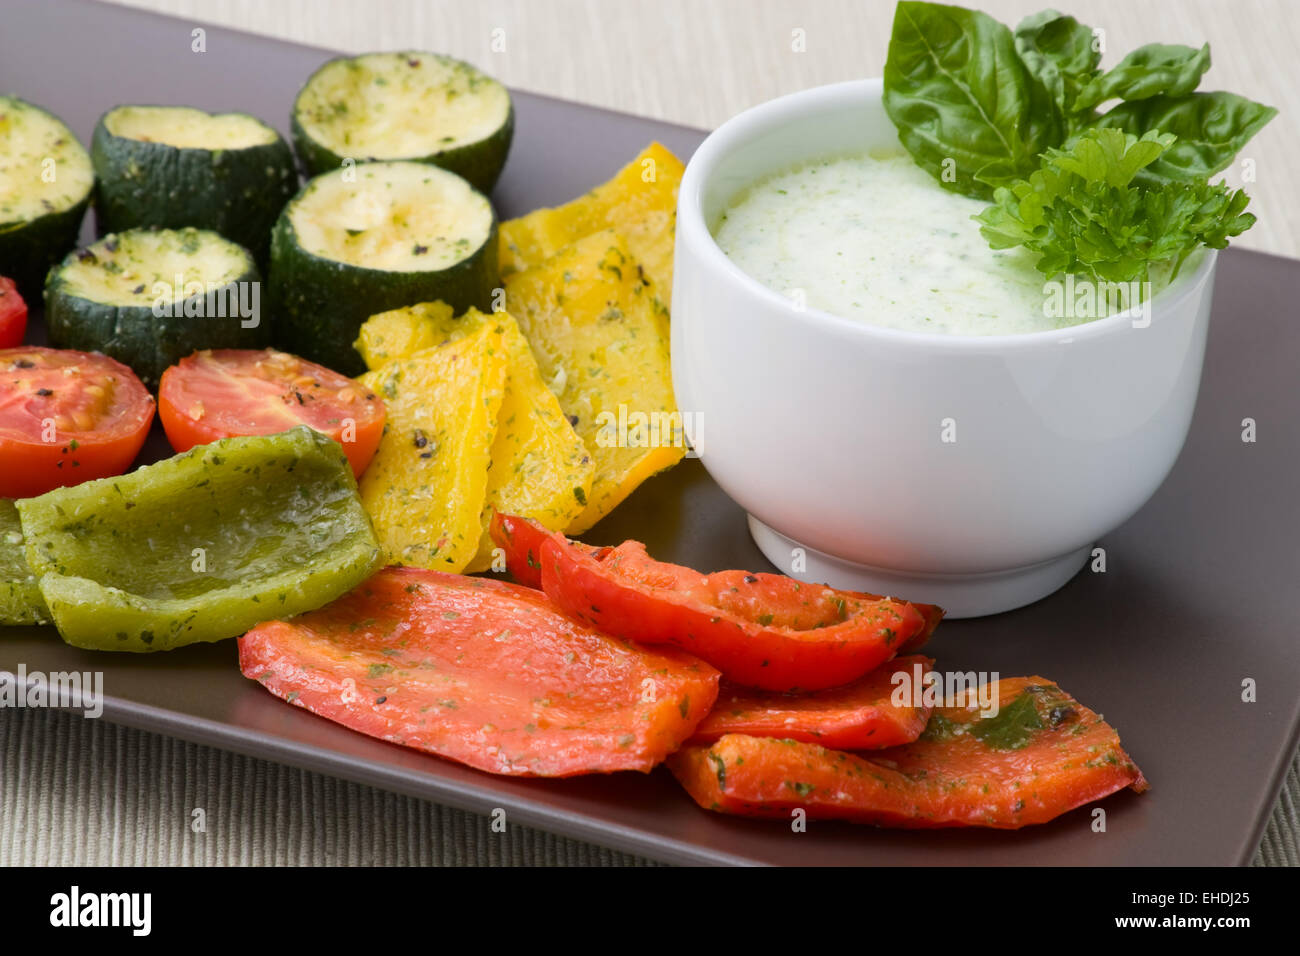 Gegrilletes Gemüse - légumes grillés Banque D'Images